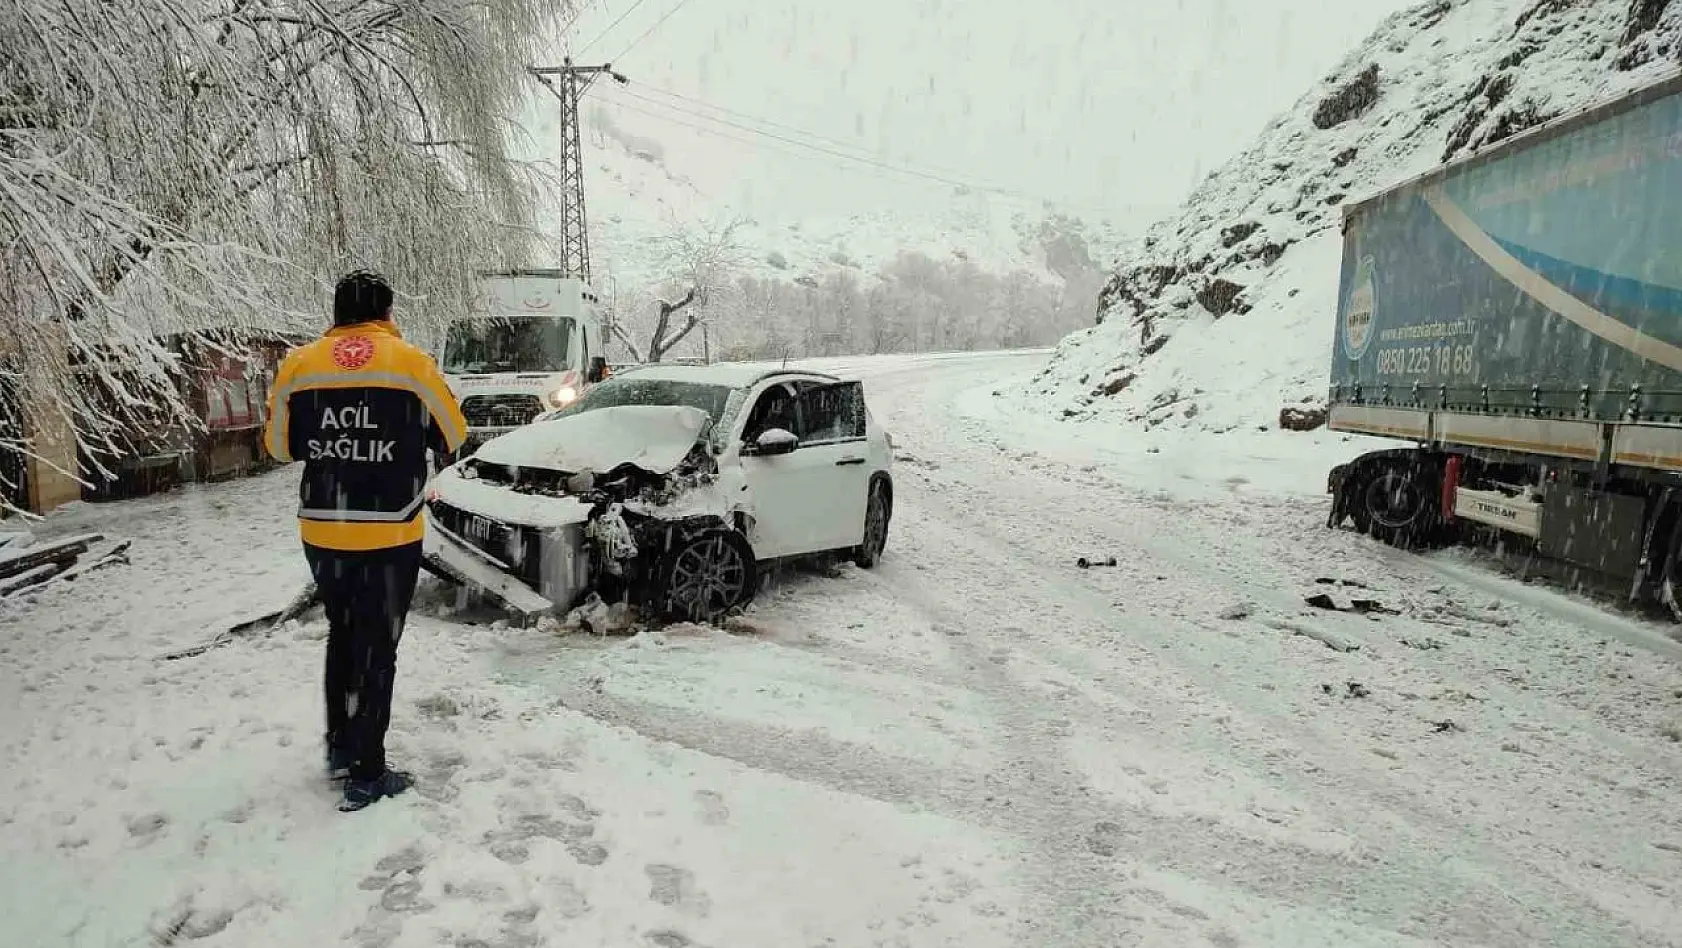 Kar yağışı kazaya neden oldu, iki araç çarpıştı: 2 yaralı